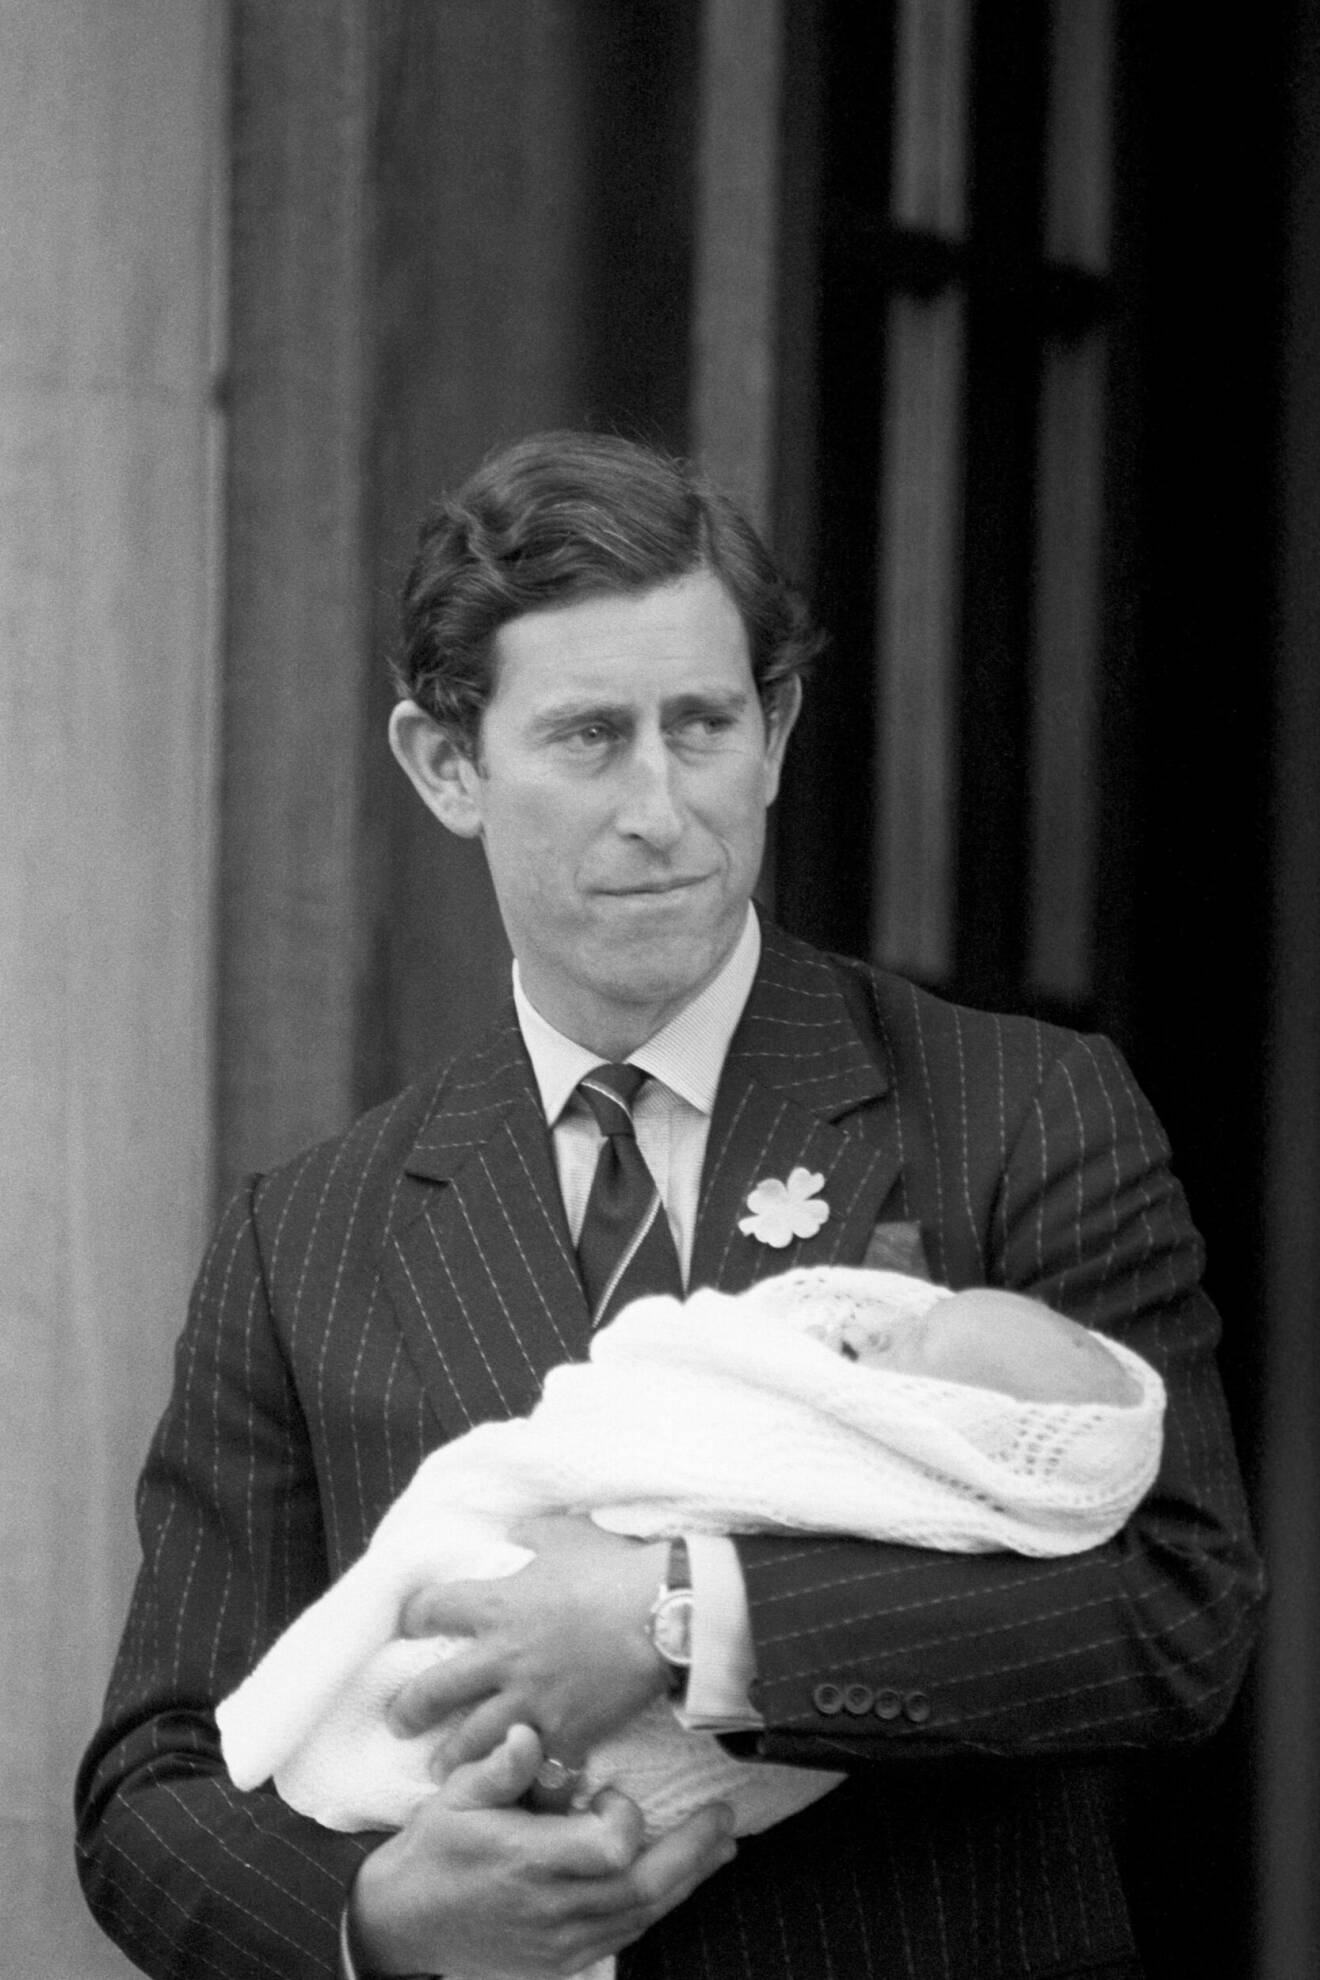 Kung Charles med prins William som nyfödd i händerna utanför sjukhuet St Mary's Hospital